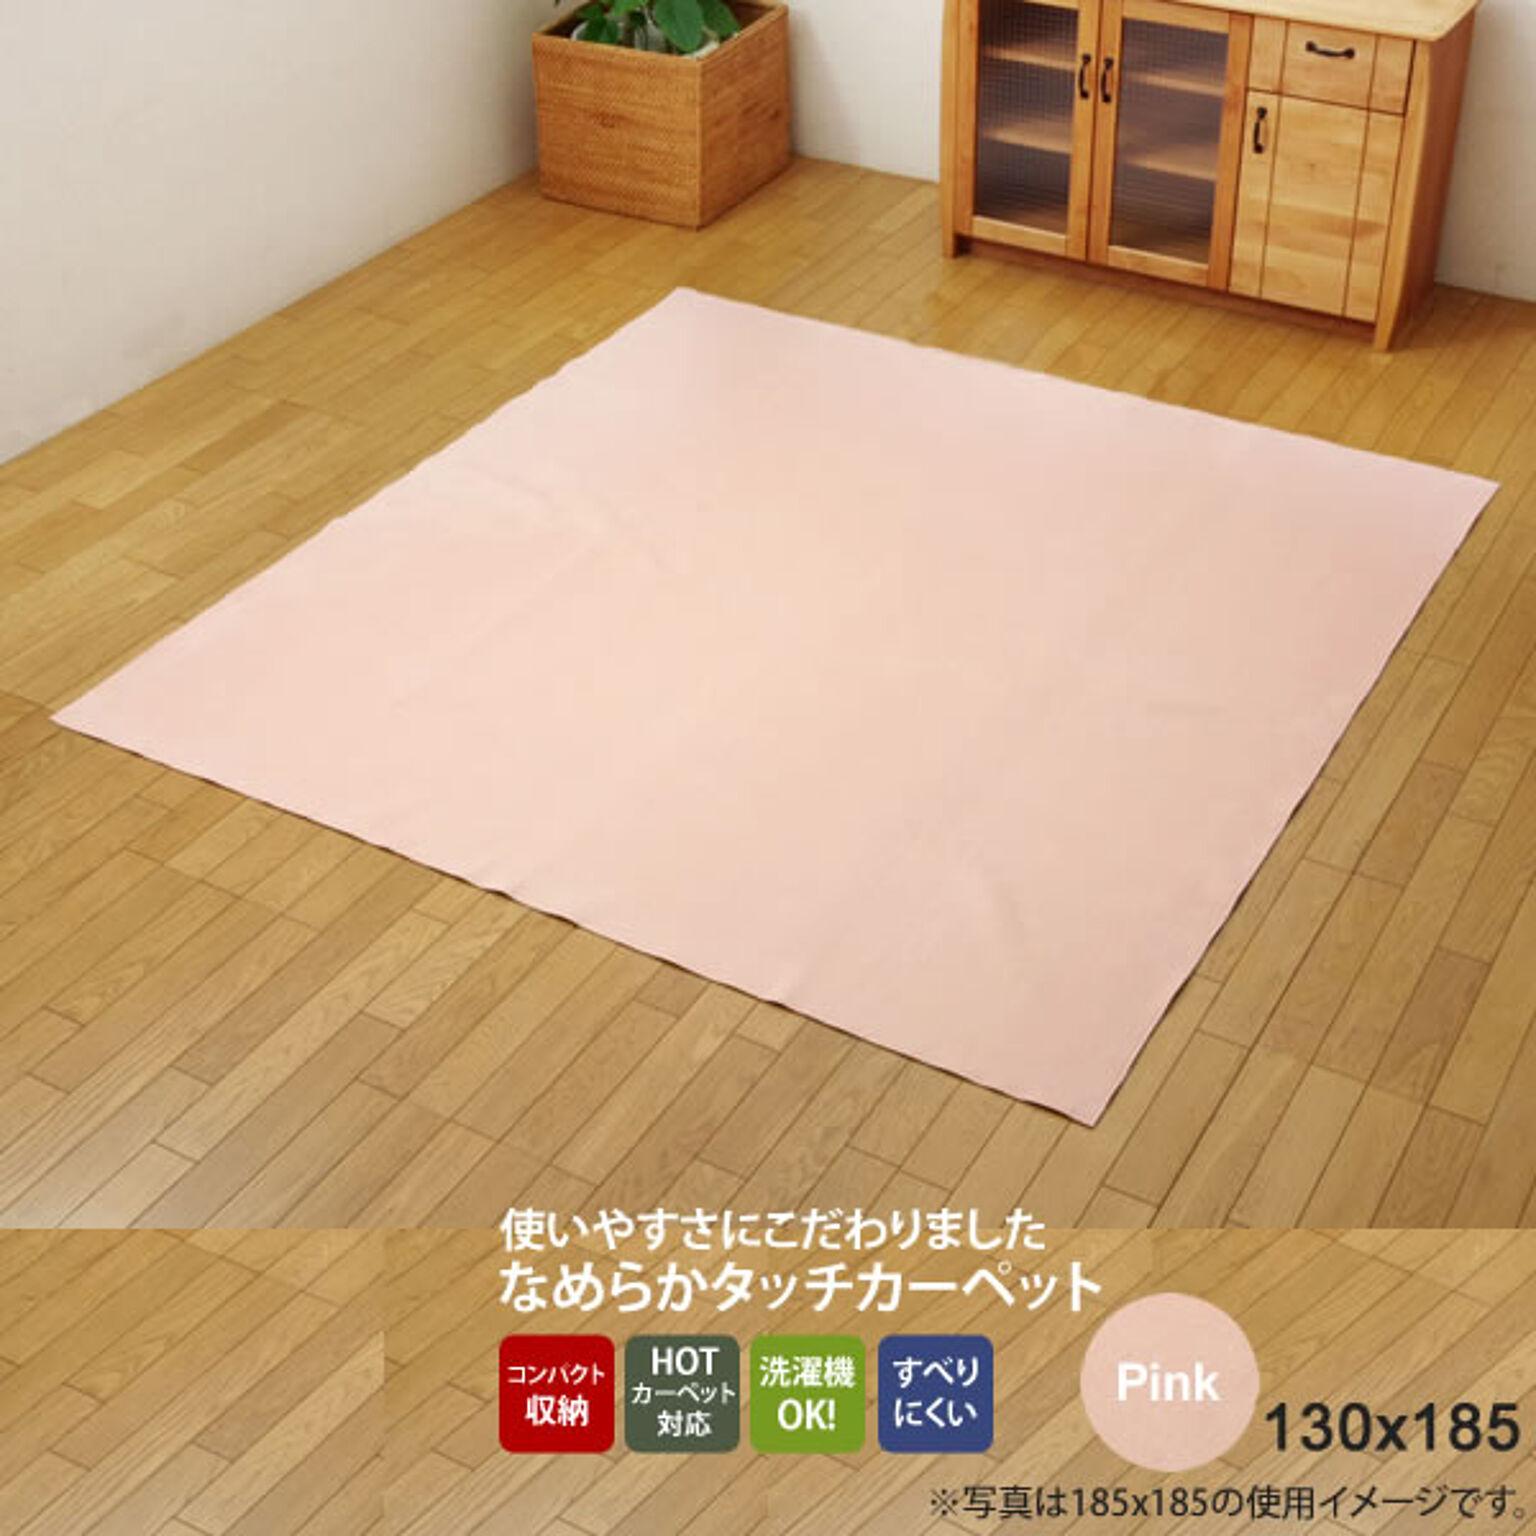 ピンク(pink) 130×185 ★ ラグ カーペット 1.5畳 洗える 無地 裏:すべりにくい加工 ホットカーペット対応  